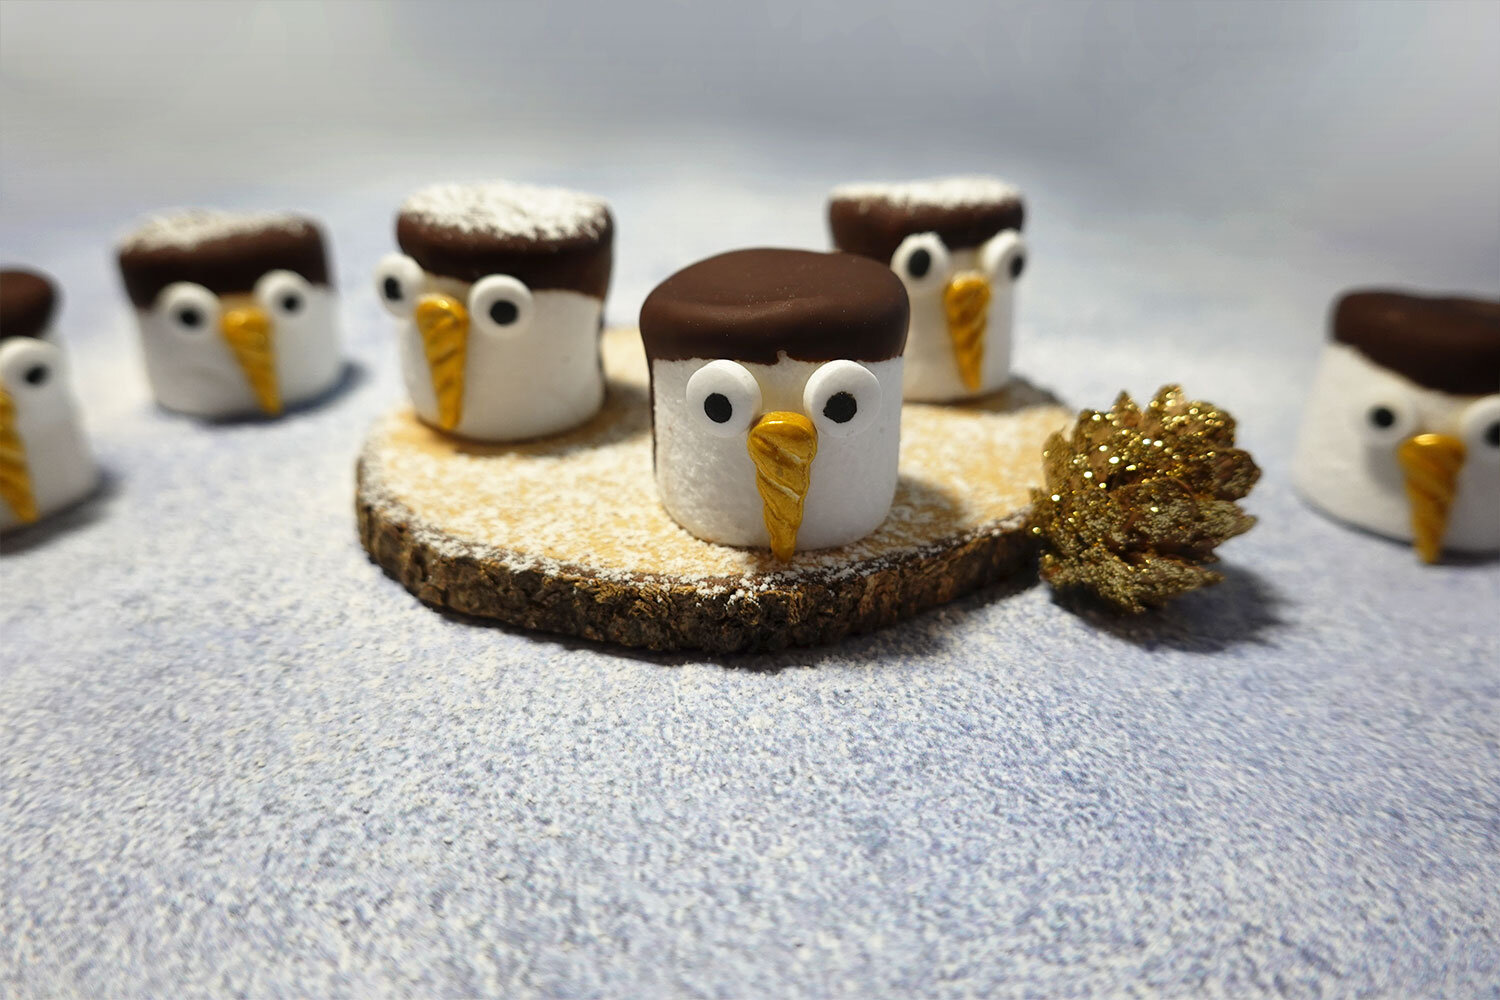 Chamallows pingouins de Noël — Raconte-moi des salades